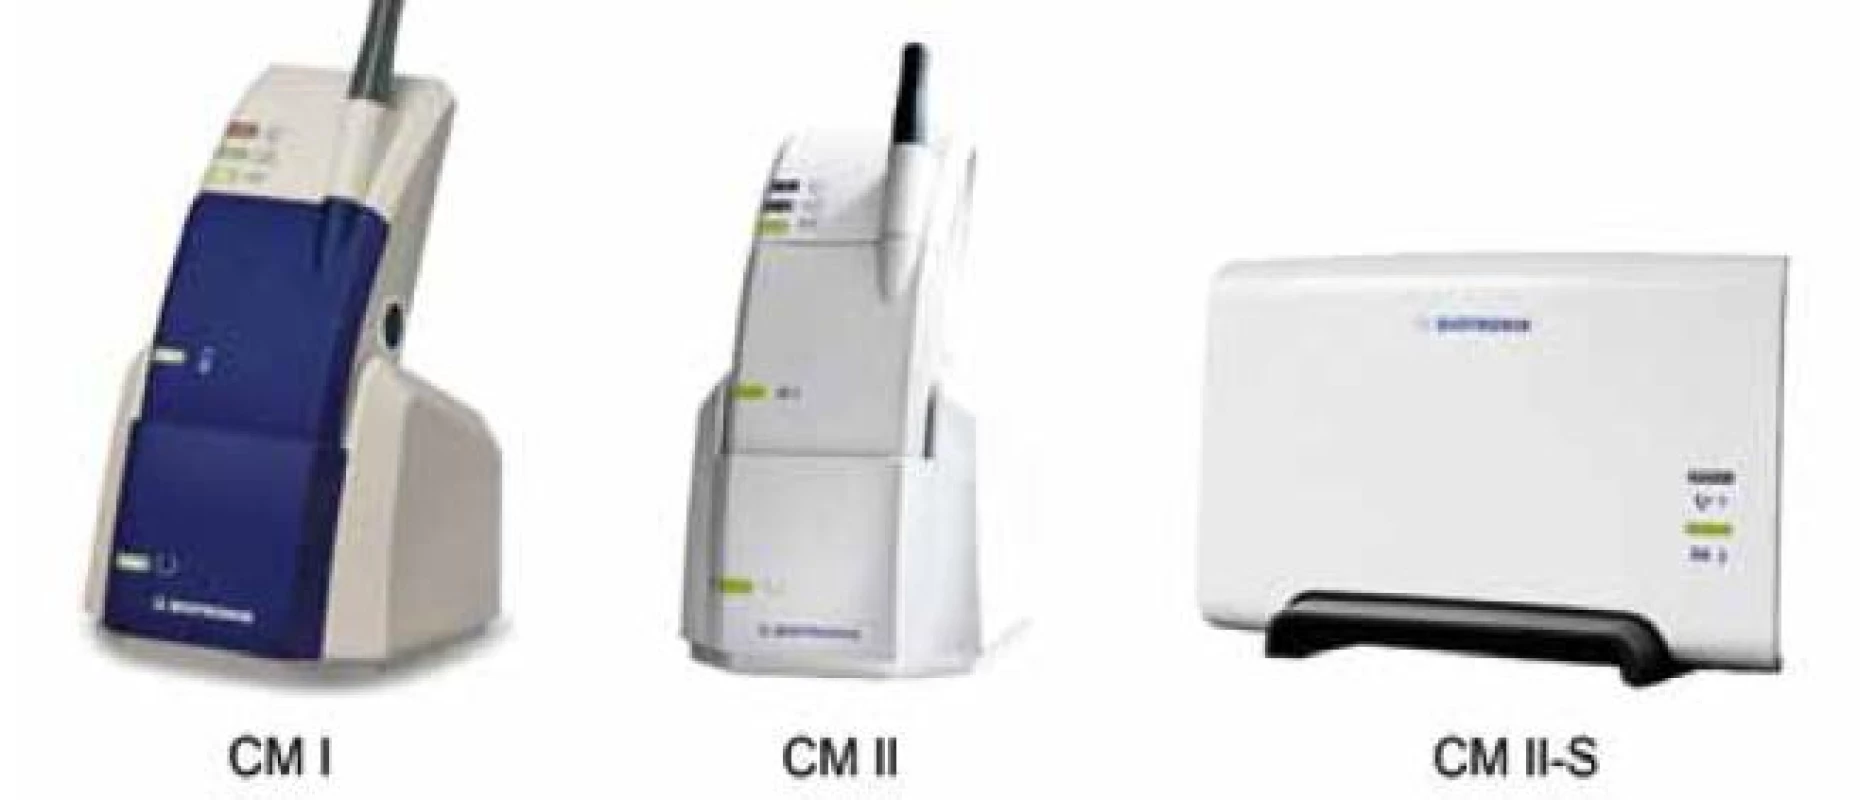 Modely pacientských jednotek systému Biotronik Home Monitoring (CardioMessengery). CM I a CM II jsou mobilní verze dostupné pro starší, resp. novější modely (viz tab. 1), CM II-S je stacionární verze.